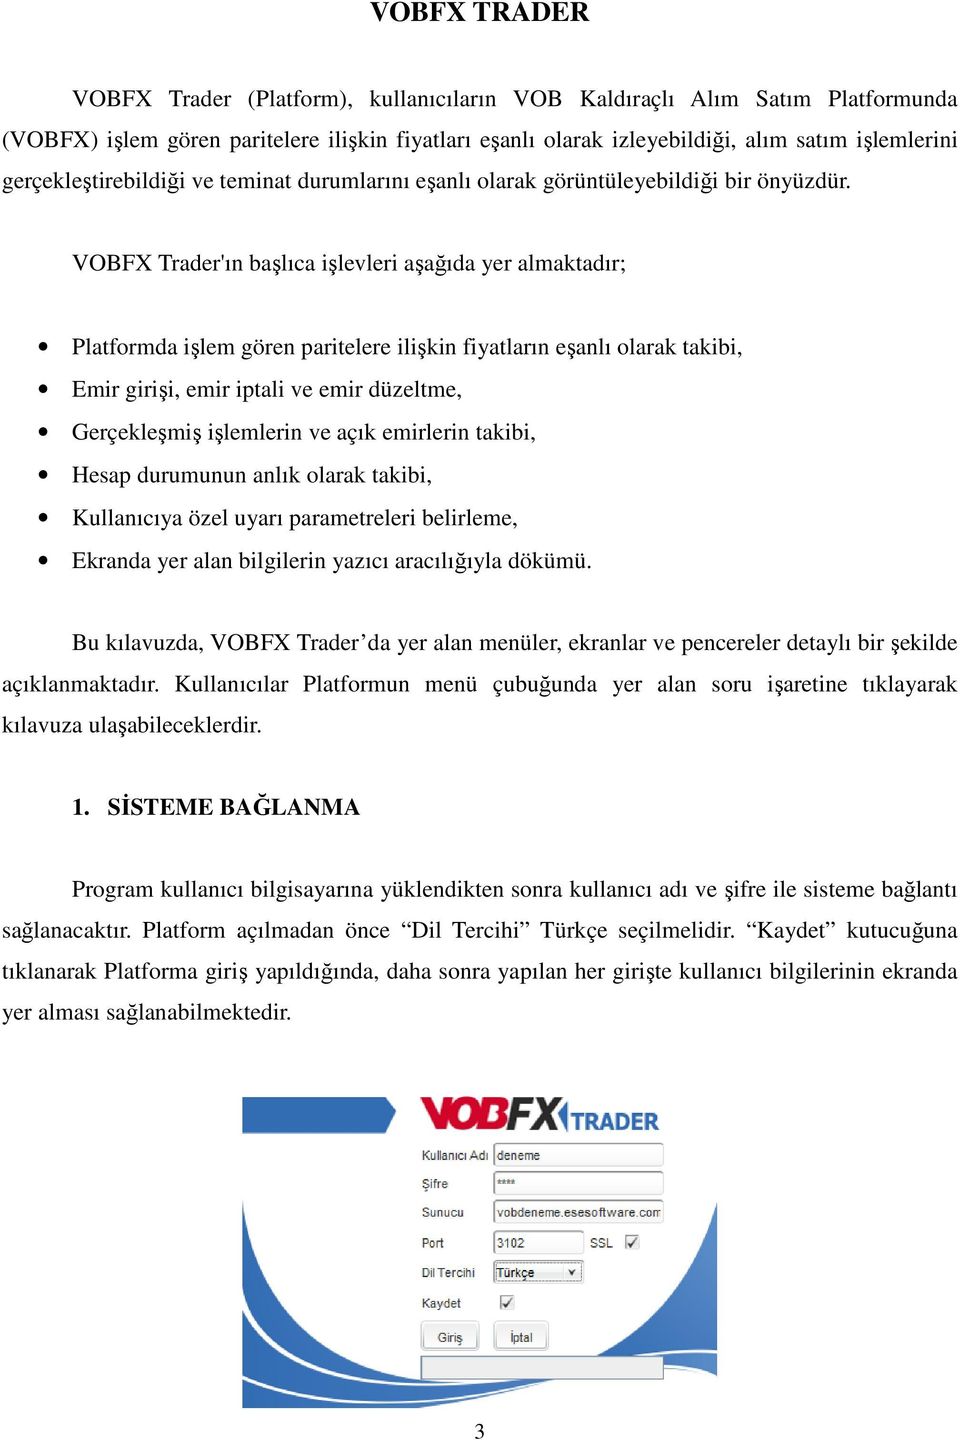 VOBFX Trader'ın başlıca işlevleri aşağıda yer almaktadır; Platformda işlem gören paritelere ilişkin fiyatların eşanlı olarak takibi, Emir girişi, emir iptali ve emir düzeltme, Gerçekleşmiş işlemlerin